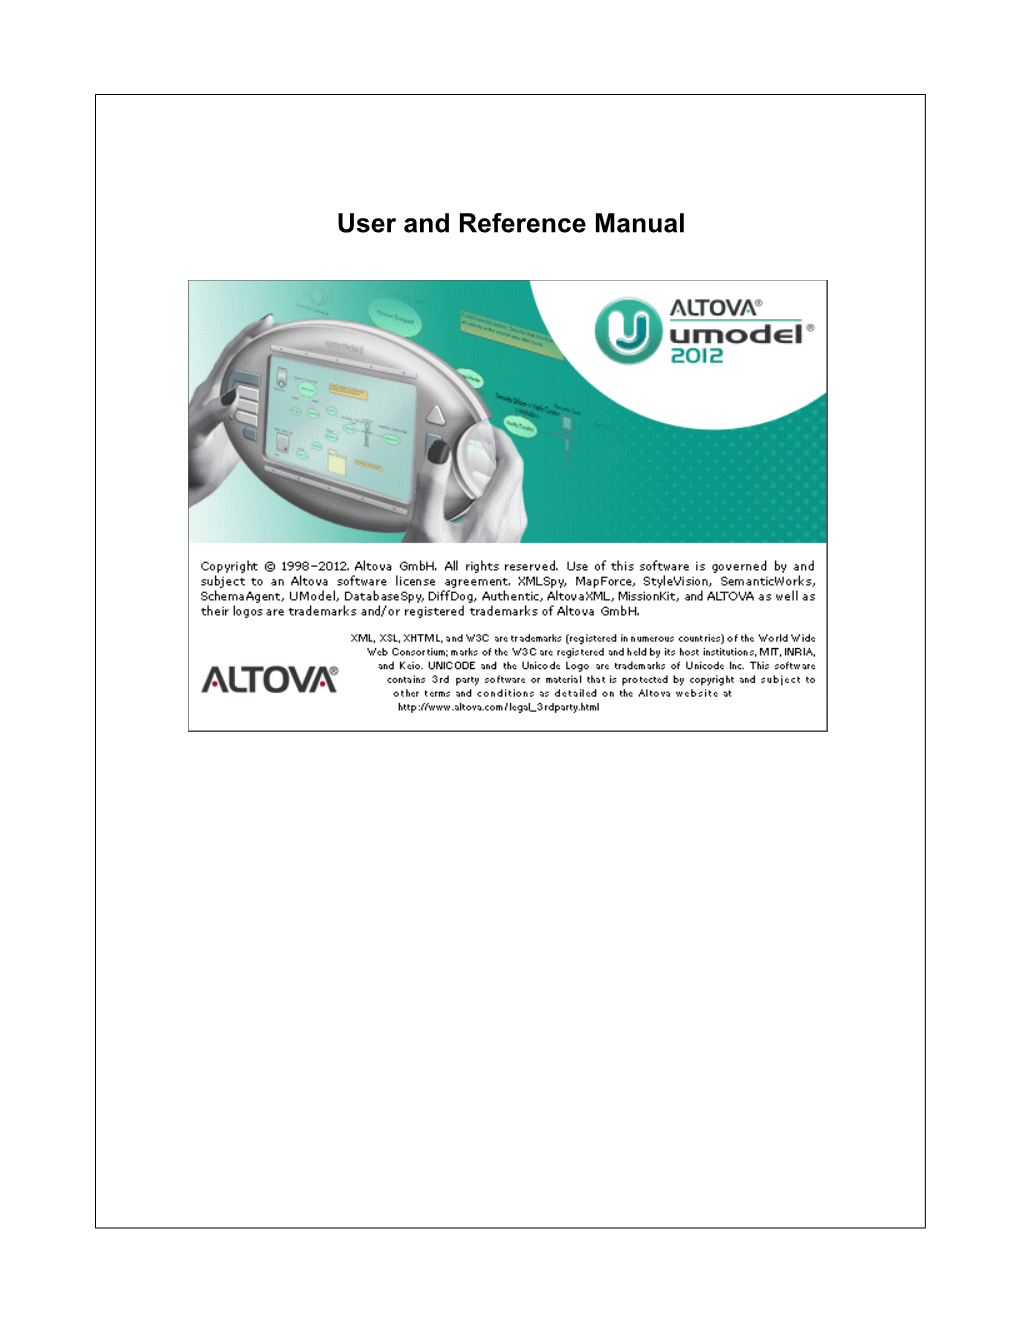 Altova Umodel 2012 User & Reference Manual